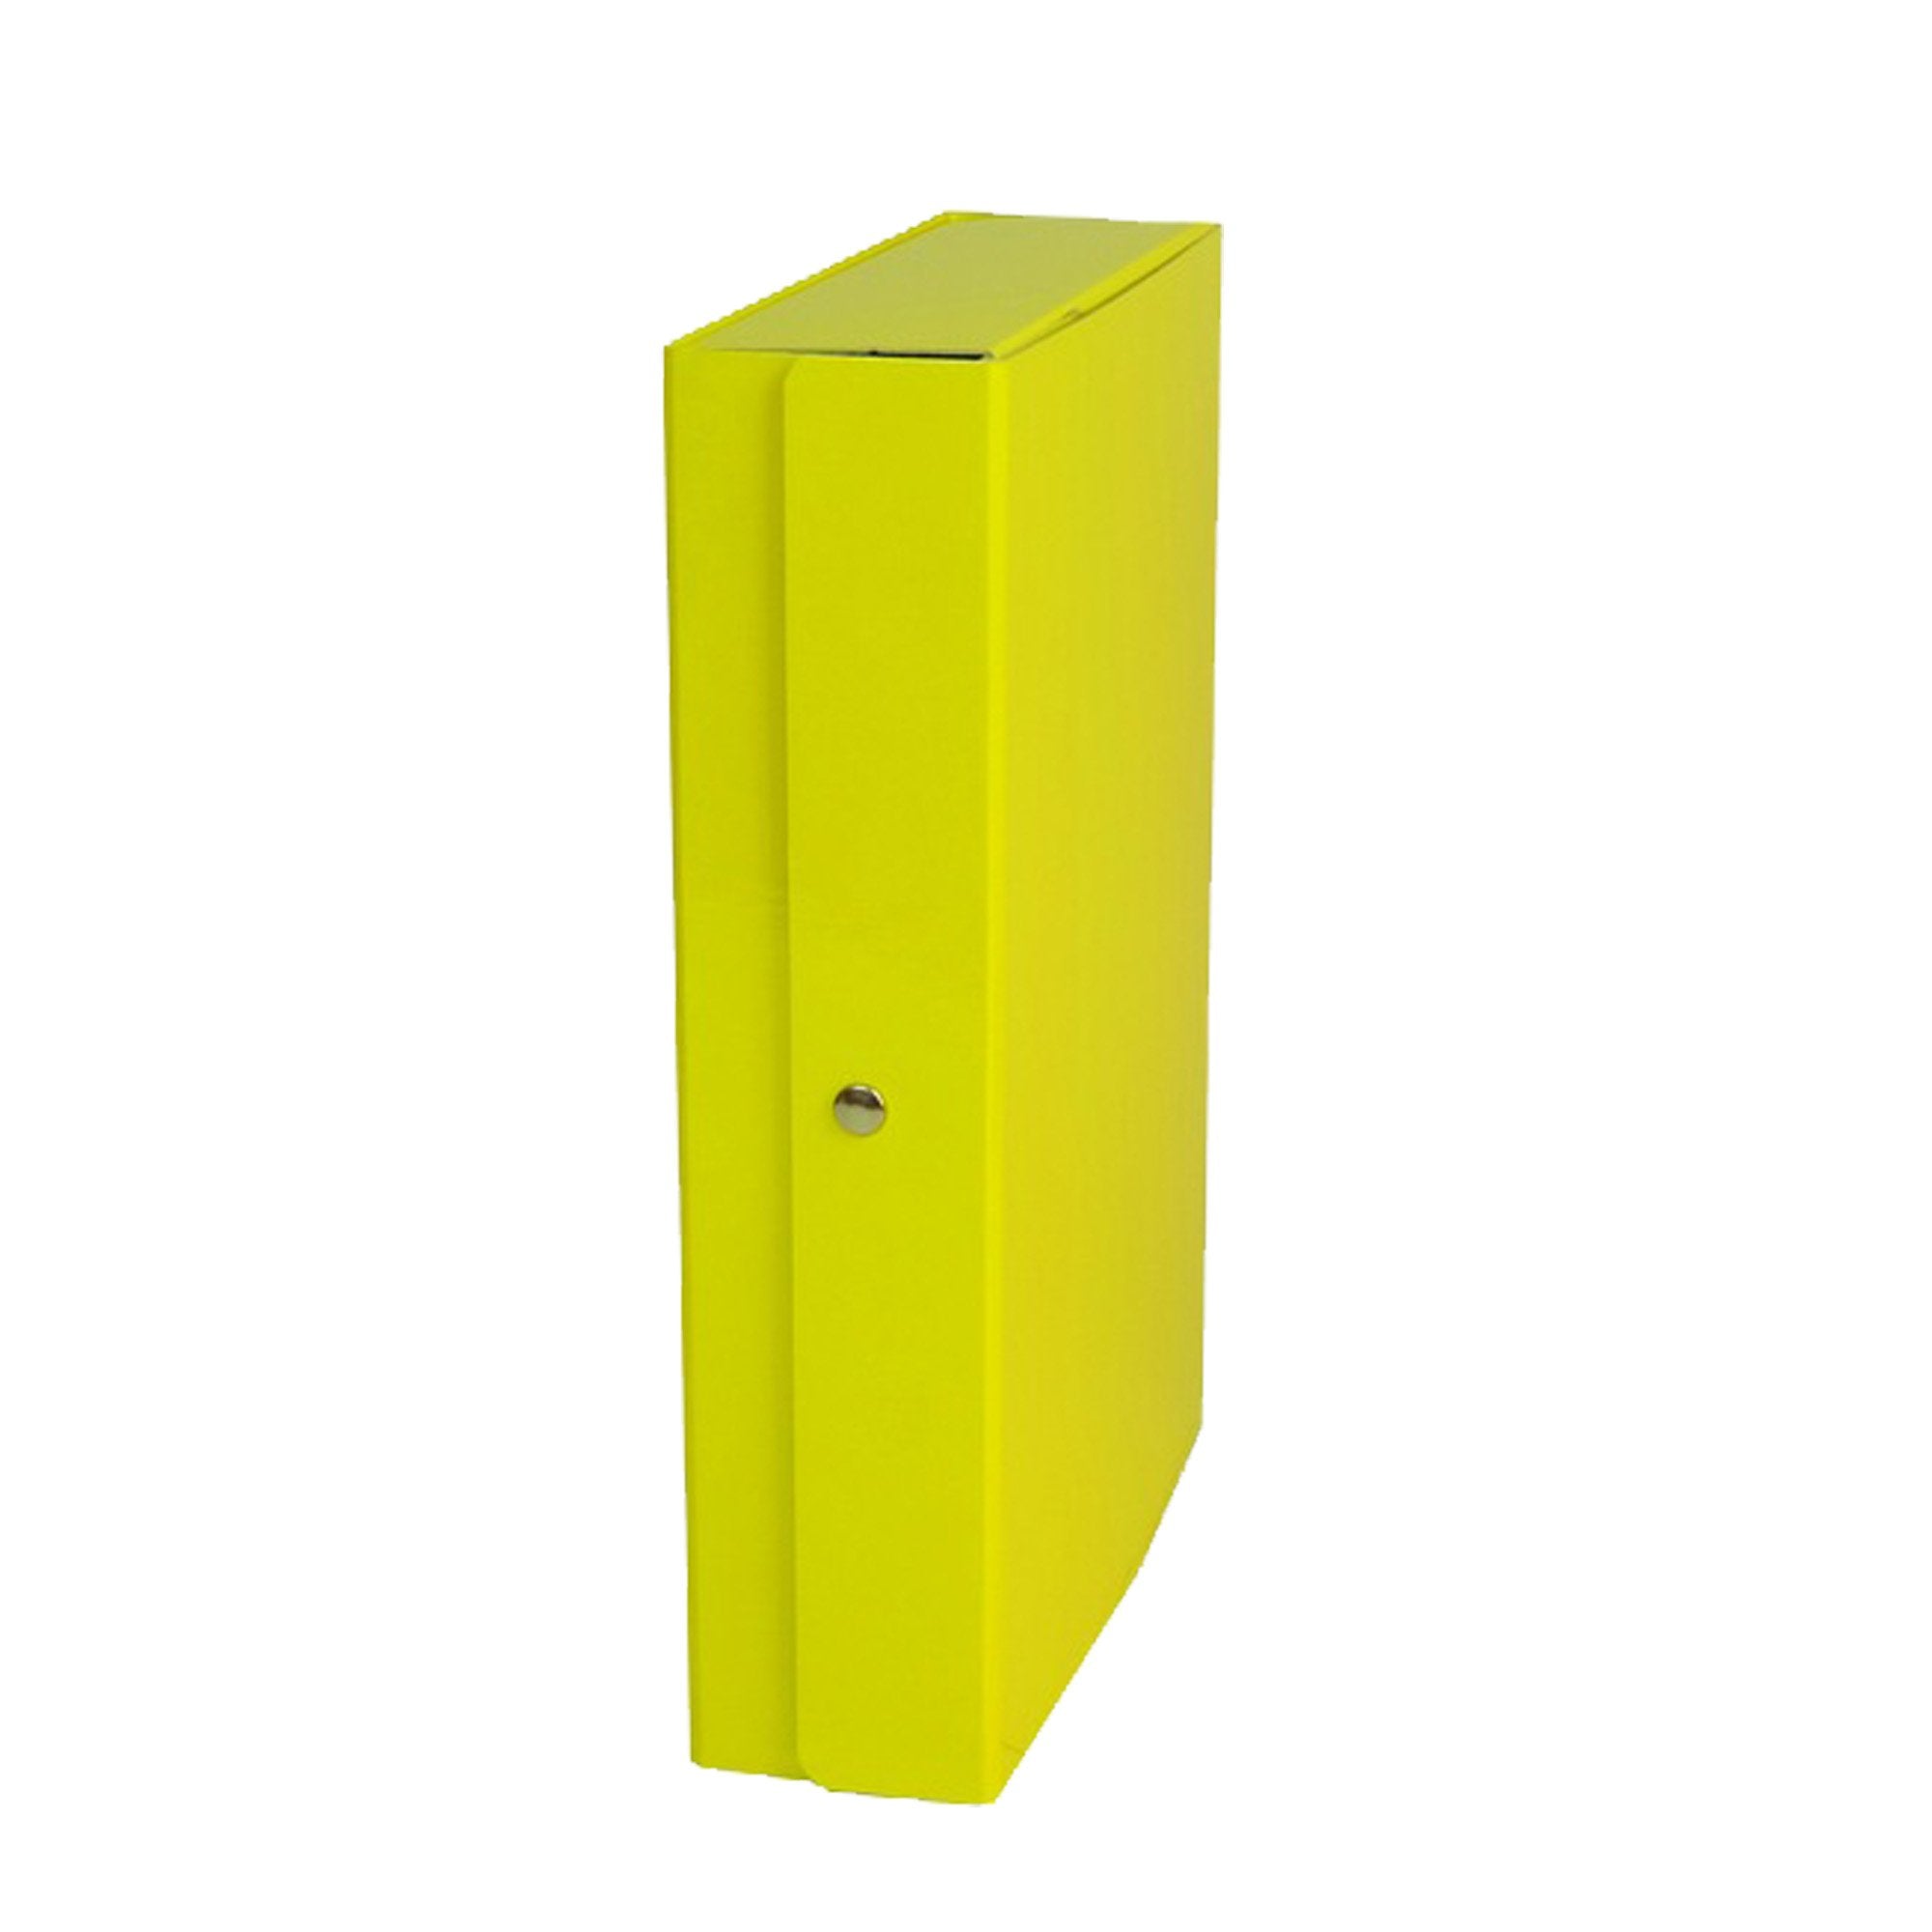 starline-scatola-progetto-12-giallo-glossy